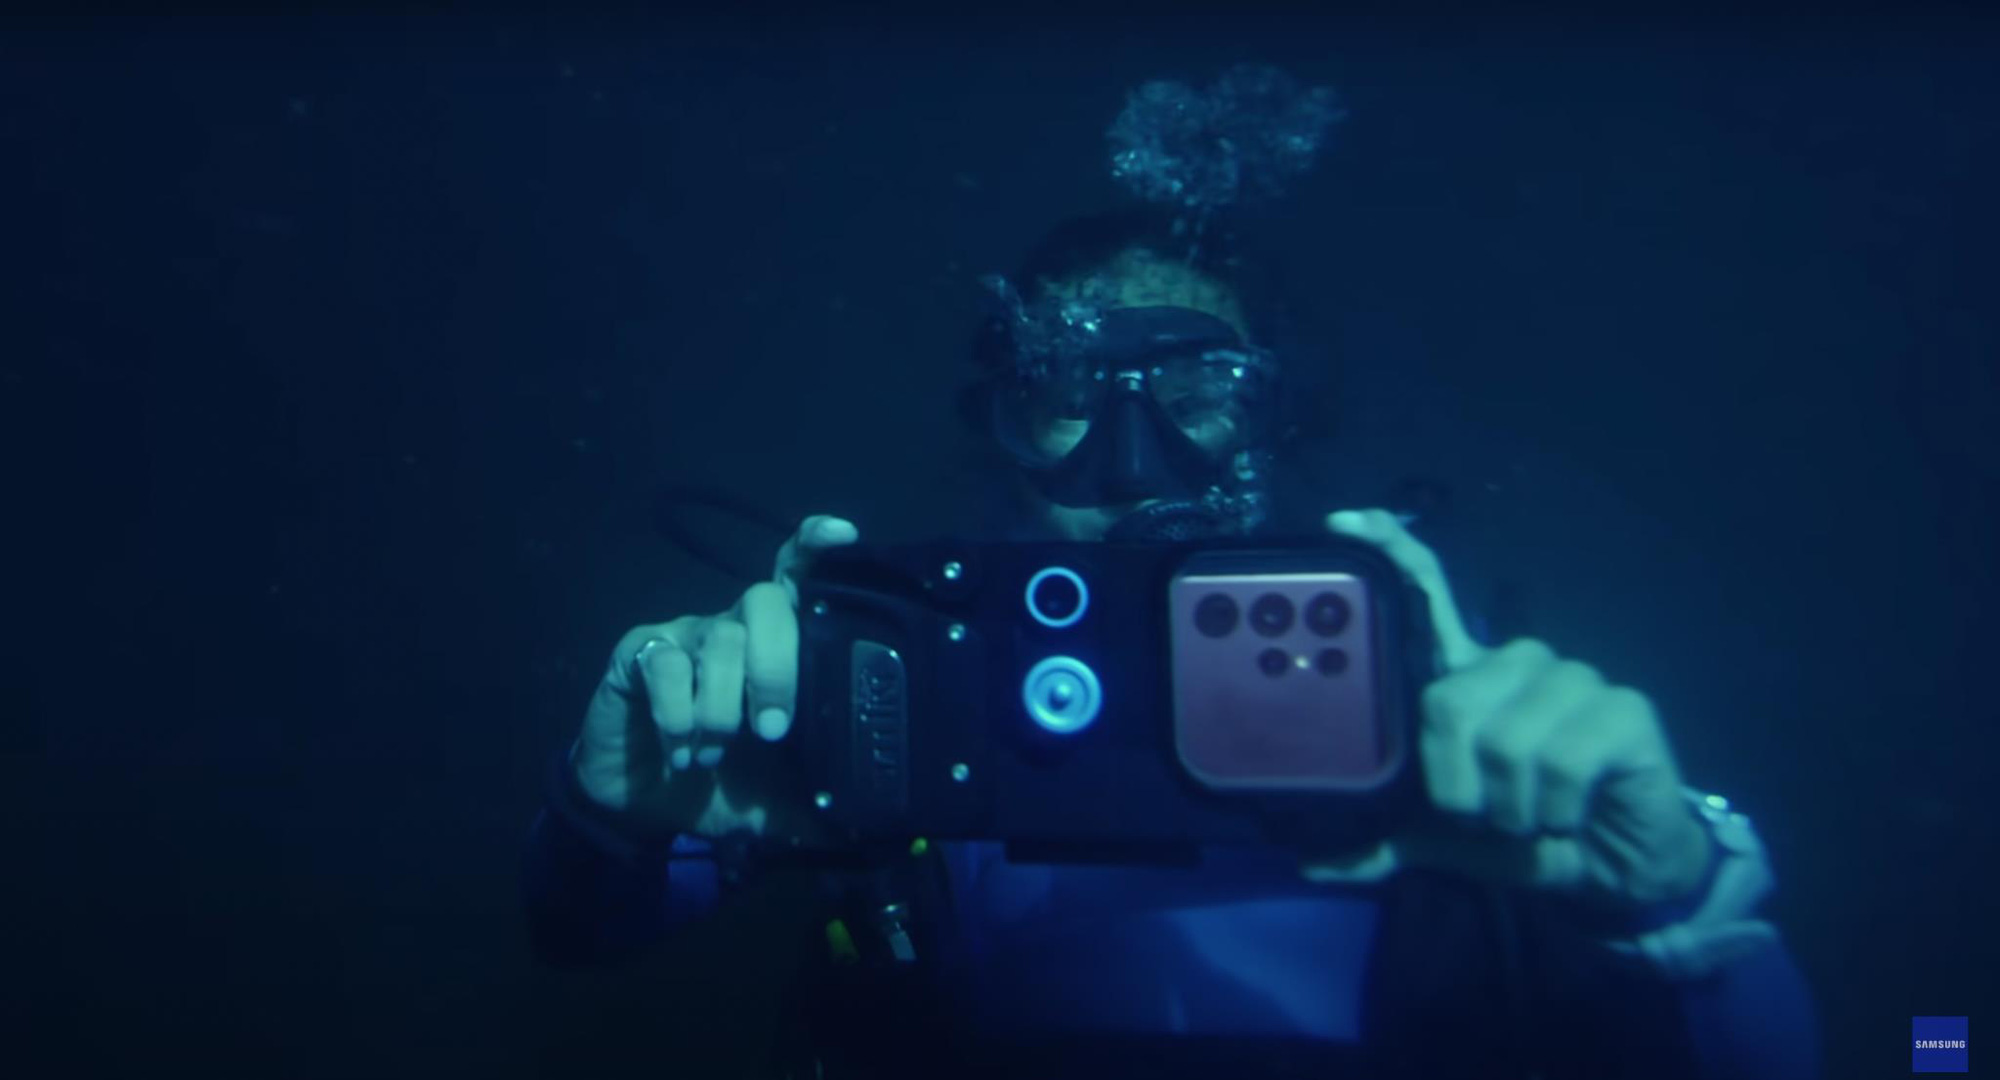 Đi tìm cảm hứng dưới đáy đại dương với camera Nightography - Ảnh 3.